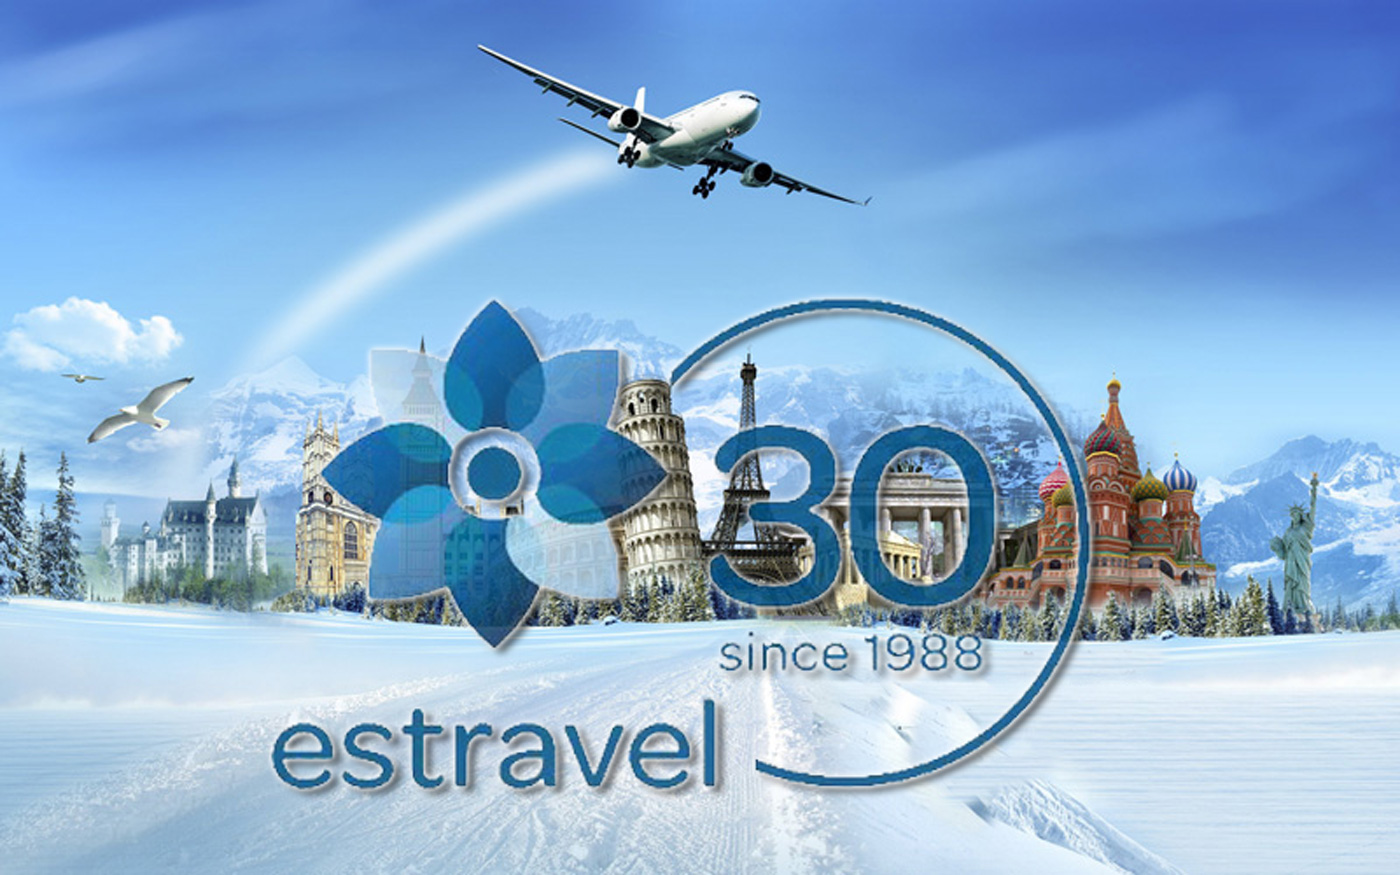 Туристическому бюро Estravel — 30 лет. Поздравляем!